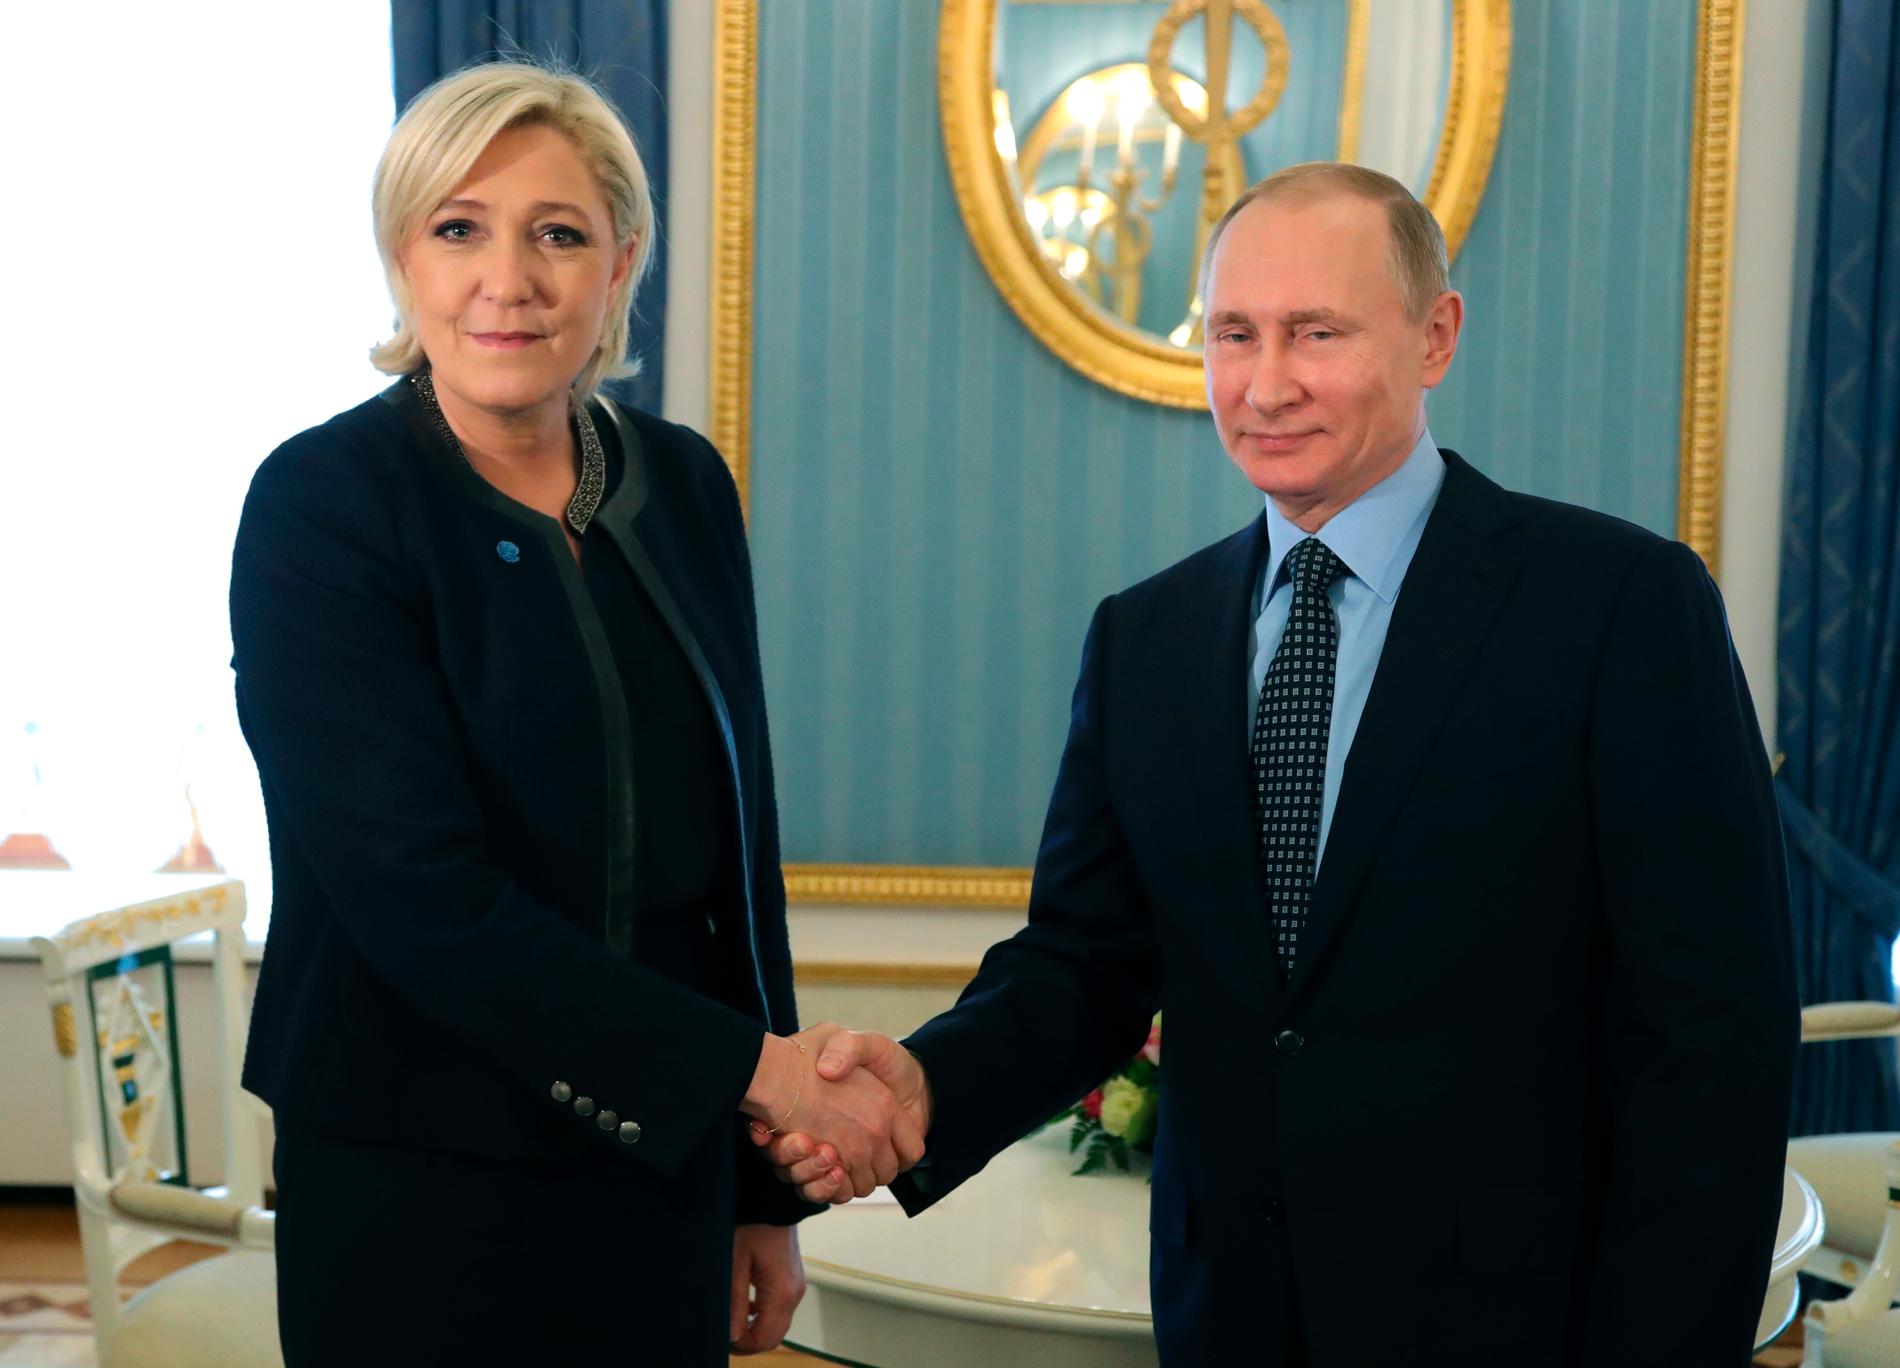 Le Pen och Putin vid ett möte 2017.